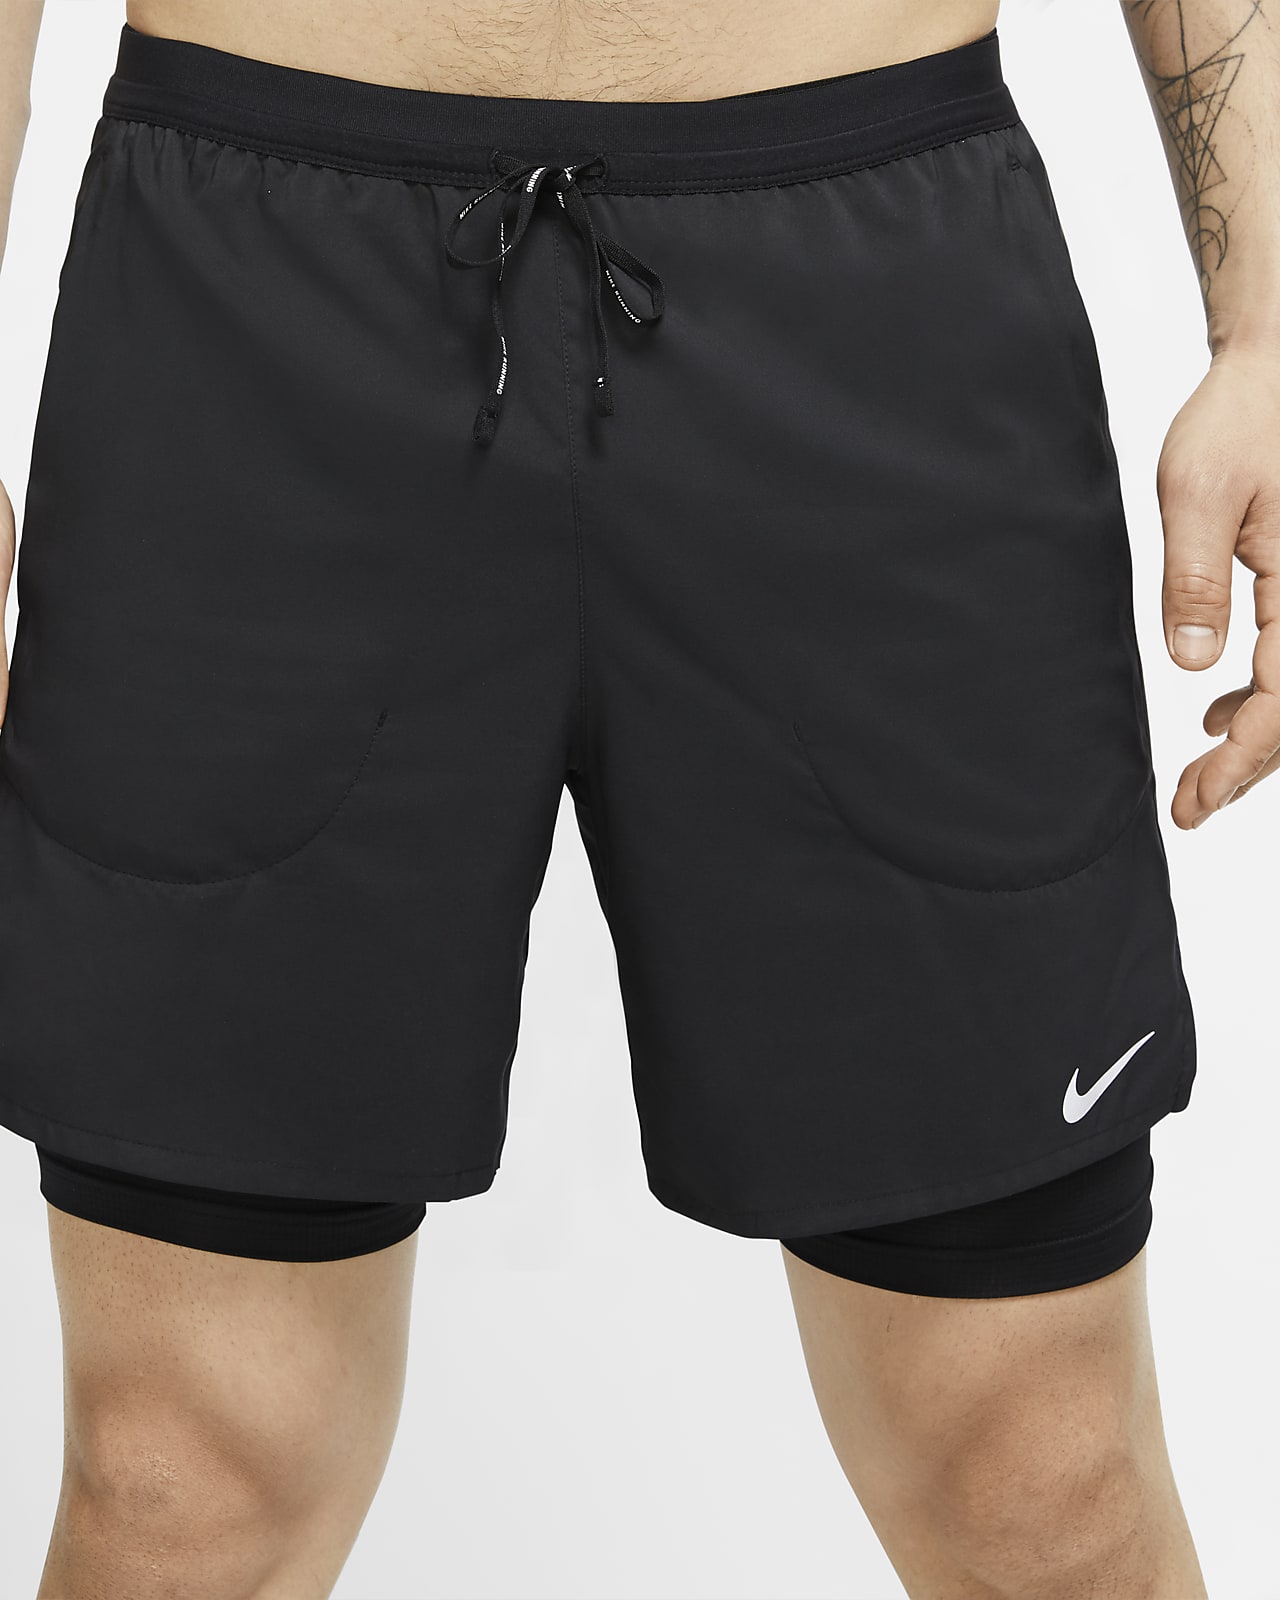 gray nike running shorts